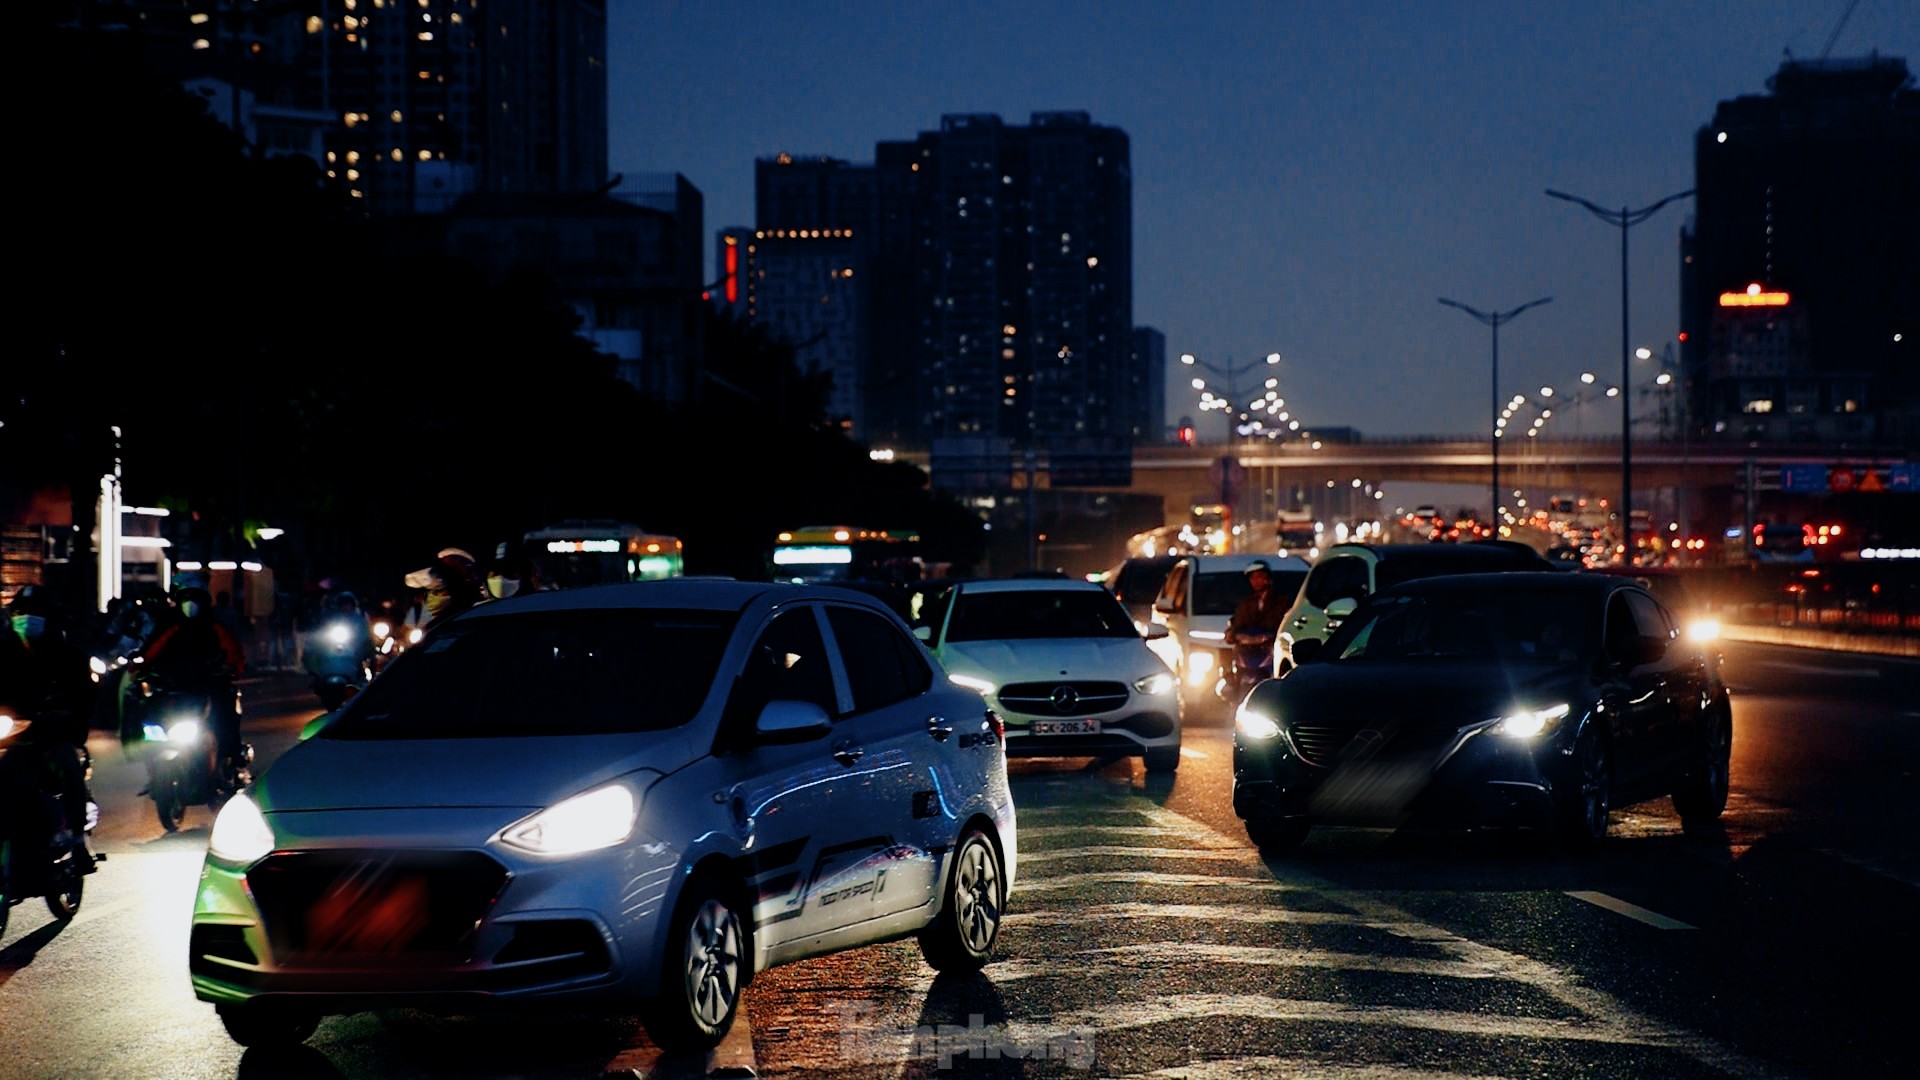 Thông xe cầu vượt Mai Dịch, vì sao giao thông vẫn hỗn loạn? ảnh 6